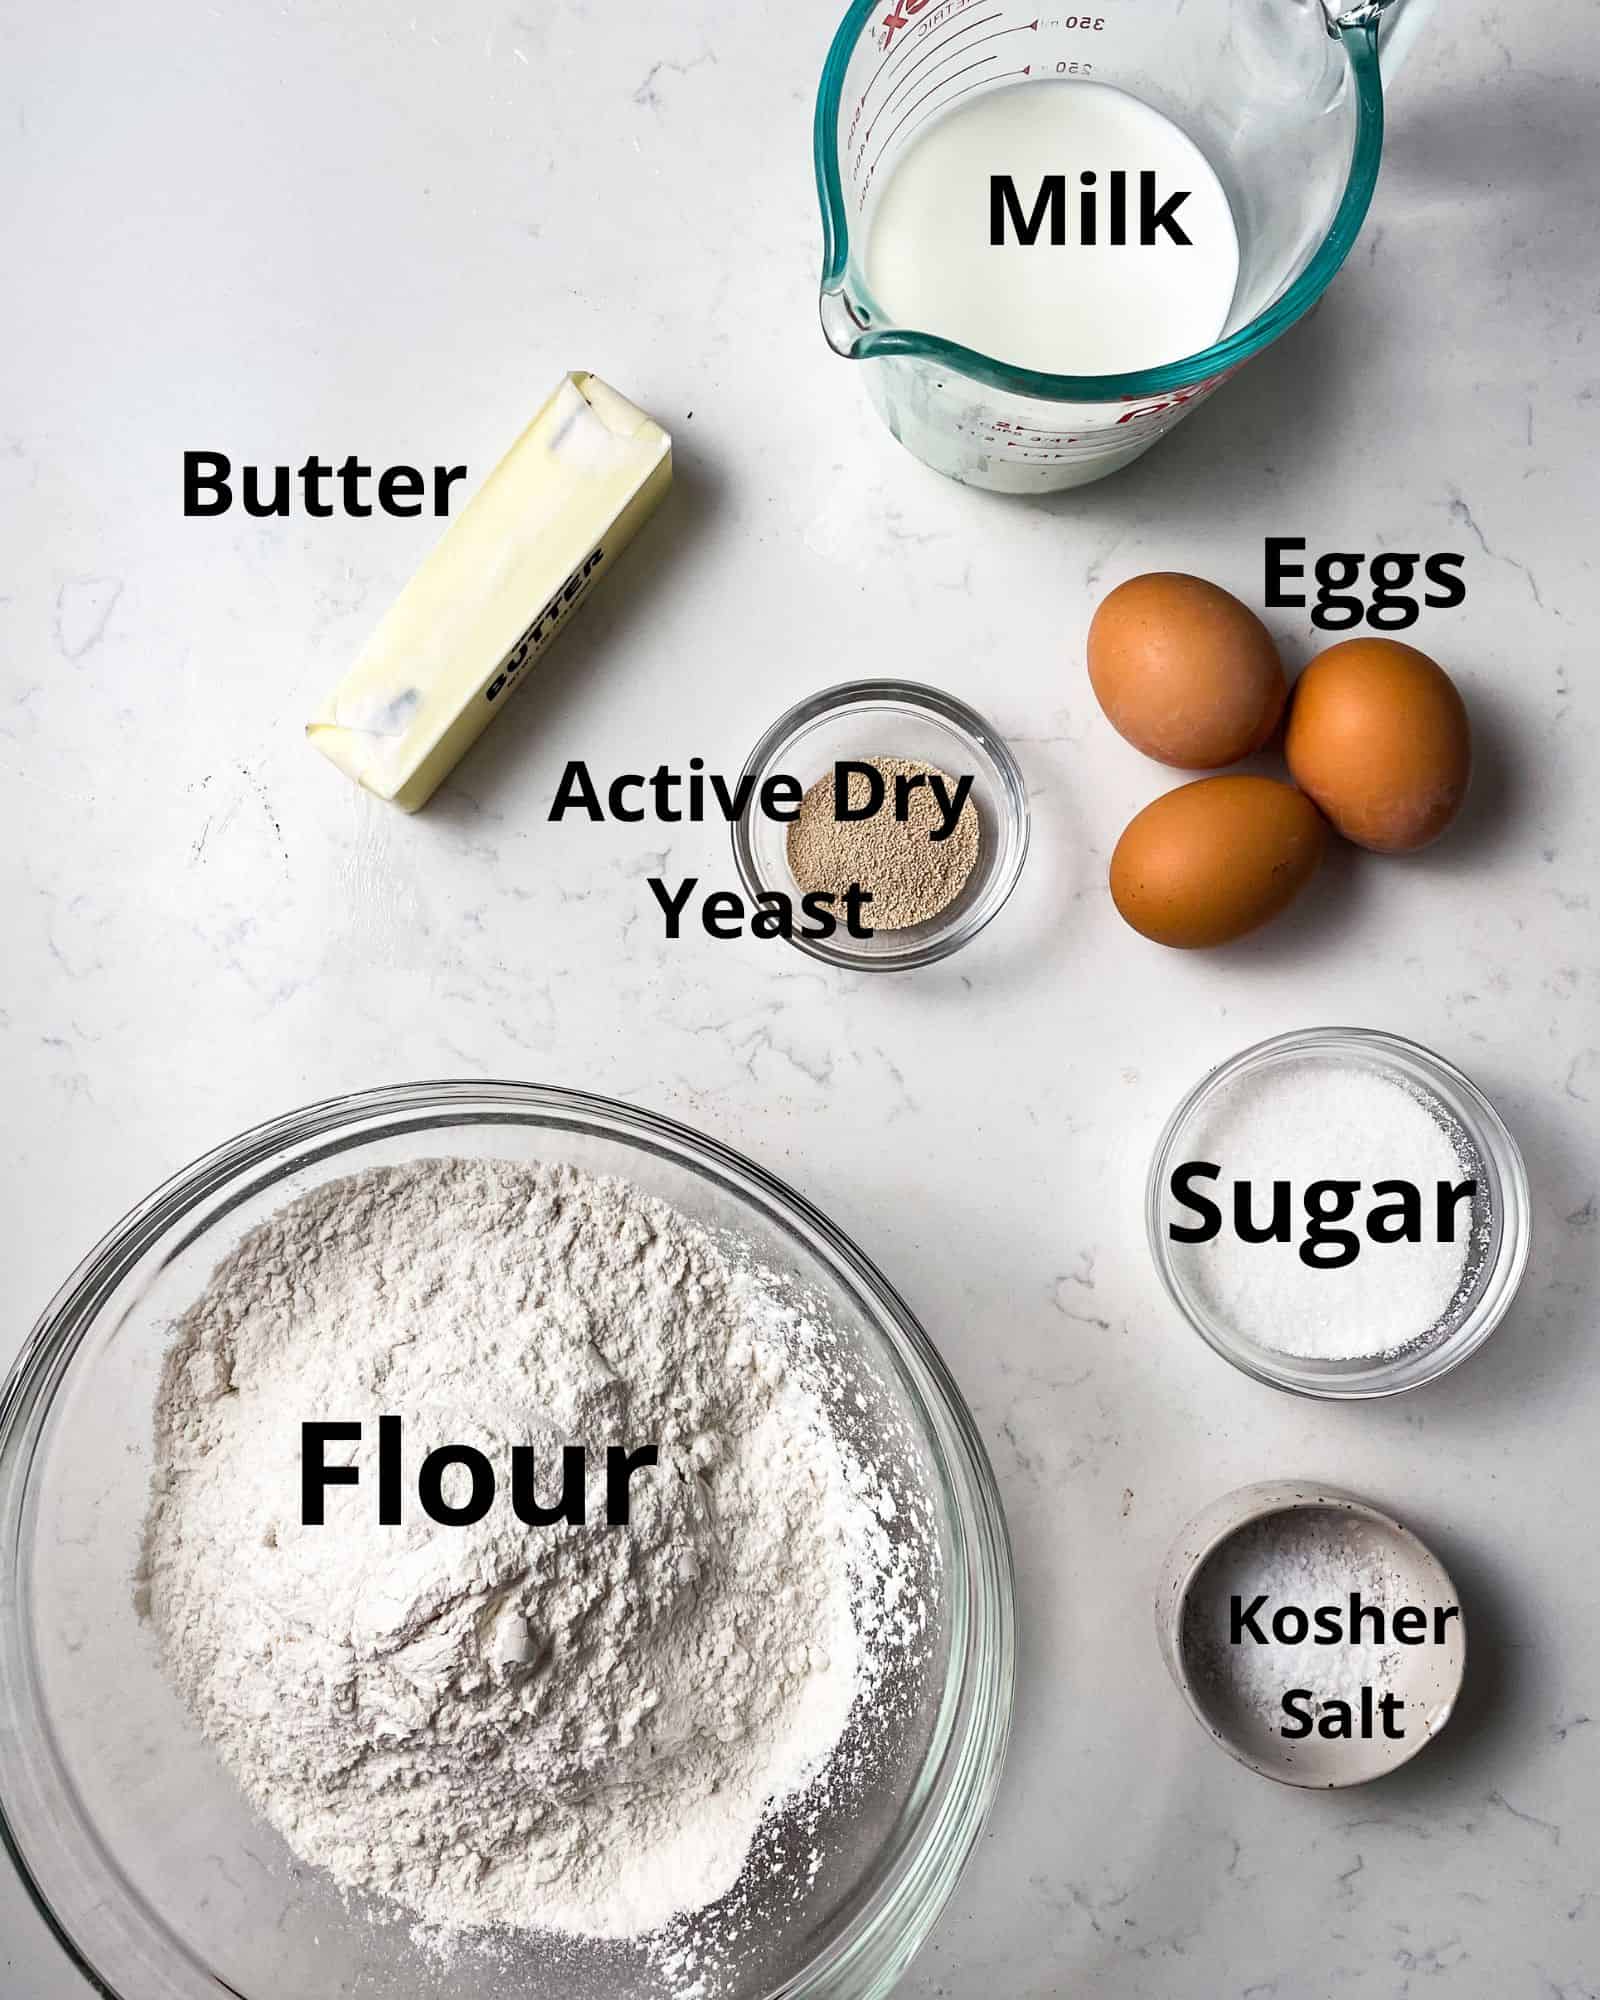 ingredients to make brioche dinner rolls - flour, sugar, active dry yeast, butter, milk, and eggs.